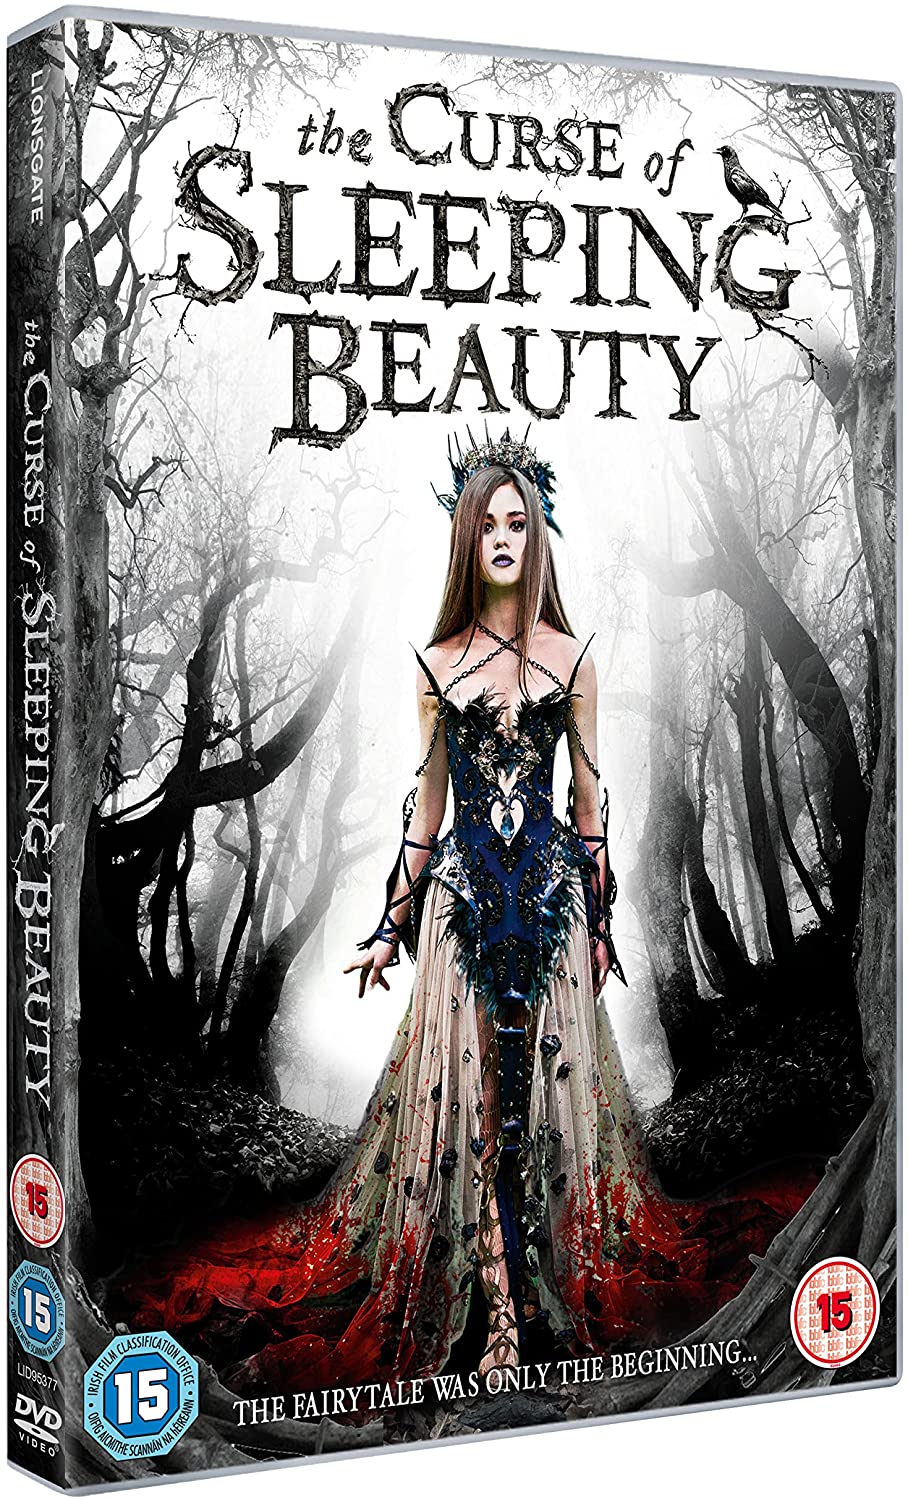 The Curse of Sleeping Beauty - Horror/Fantasy [DVD]